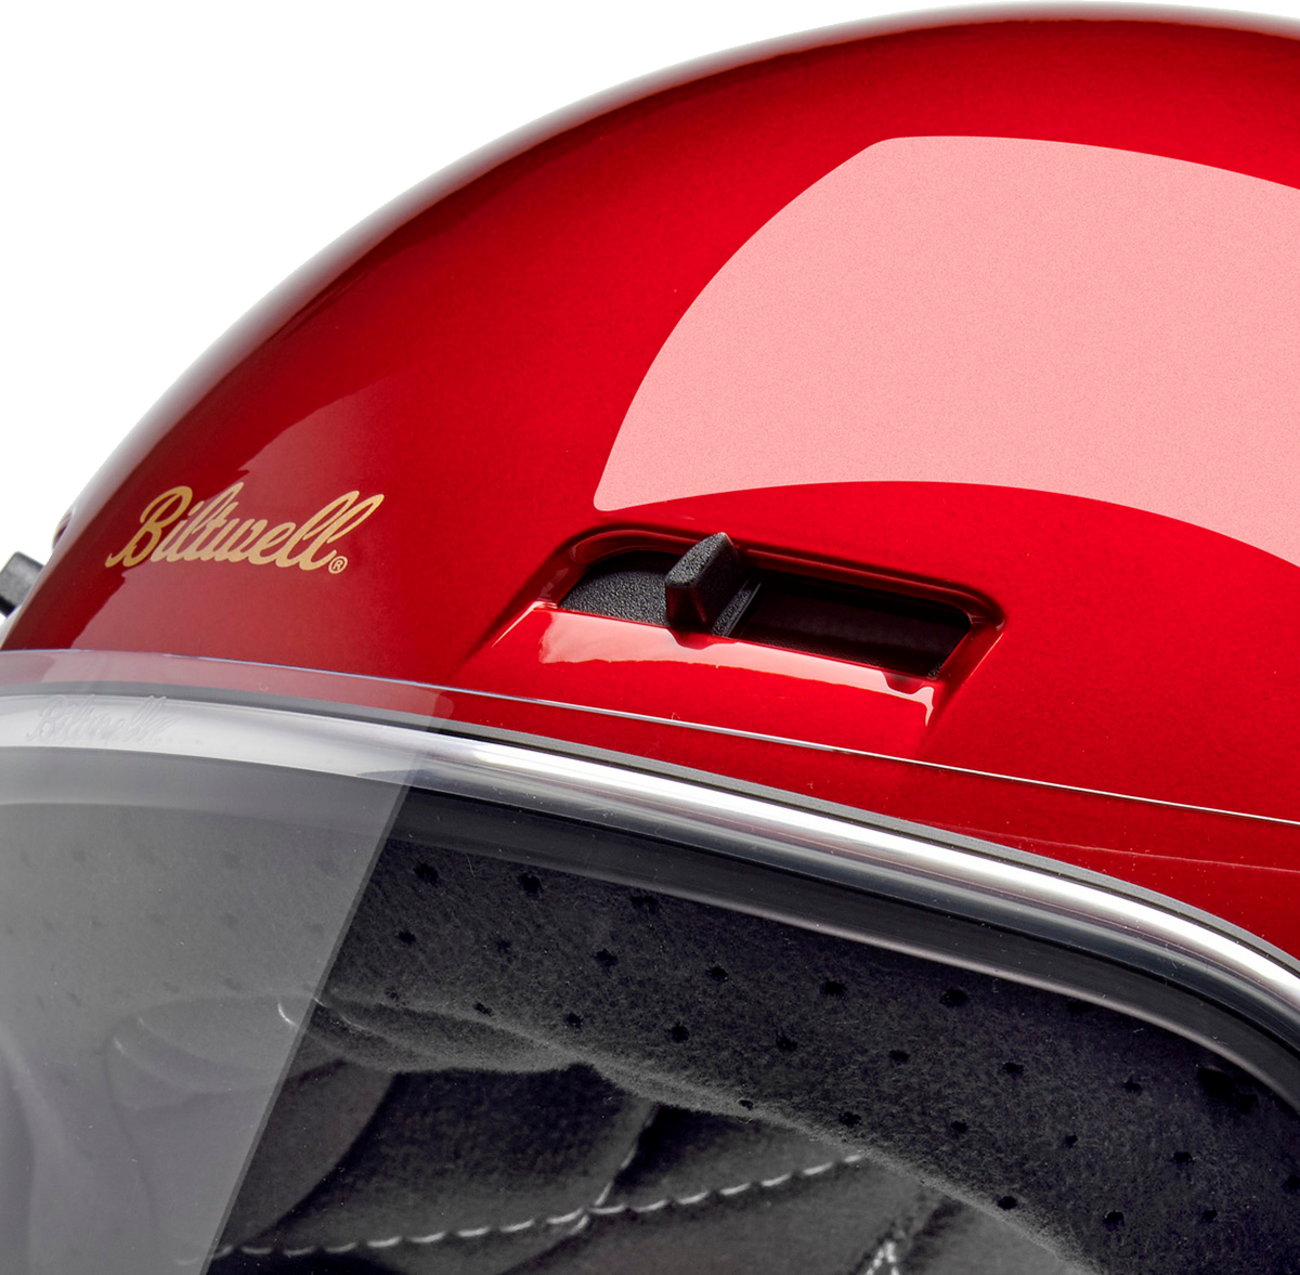 BILTWELL Gringo SV Helmet - Metallic Cherry Red